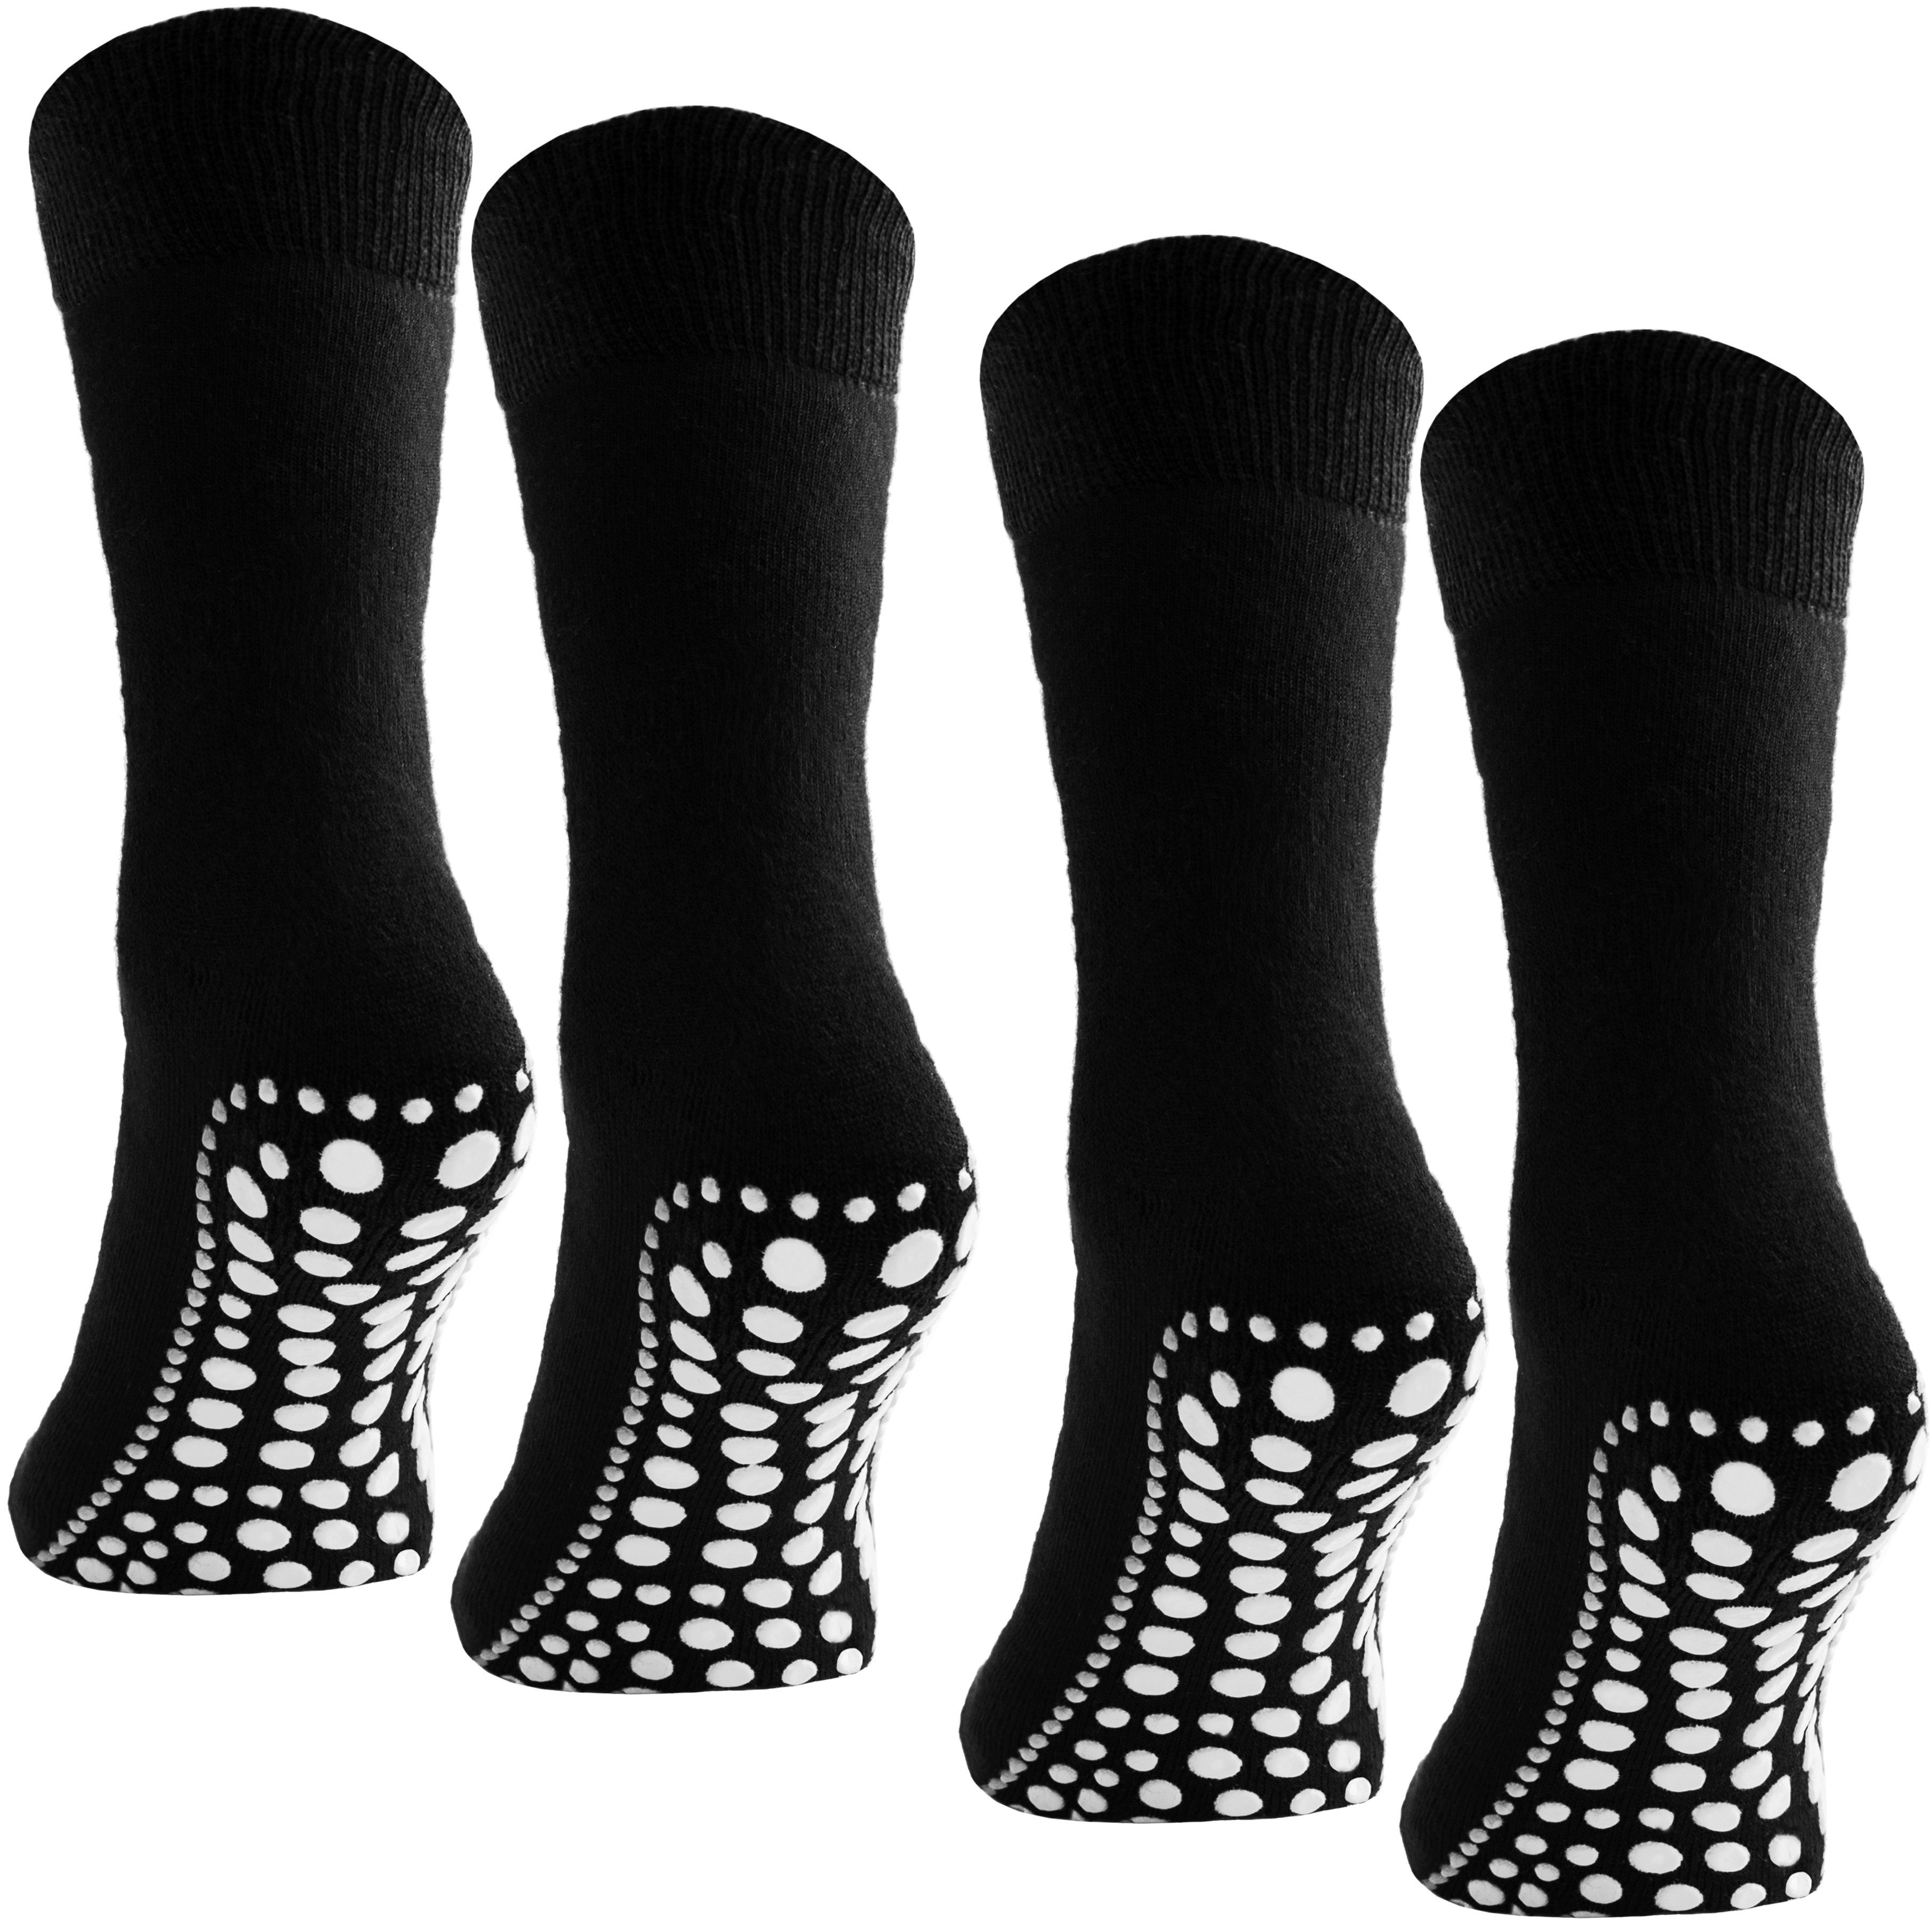 BRUBAKER ABS-Socken Unisex Haussocken (4-Paar, Baumwolle) Anti Rutsch Socken für Damen und Herren Schwarz